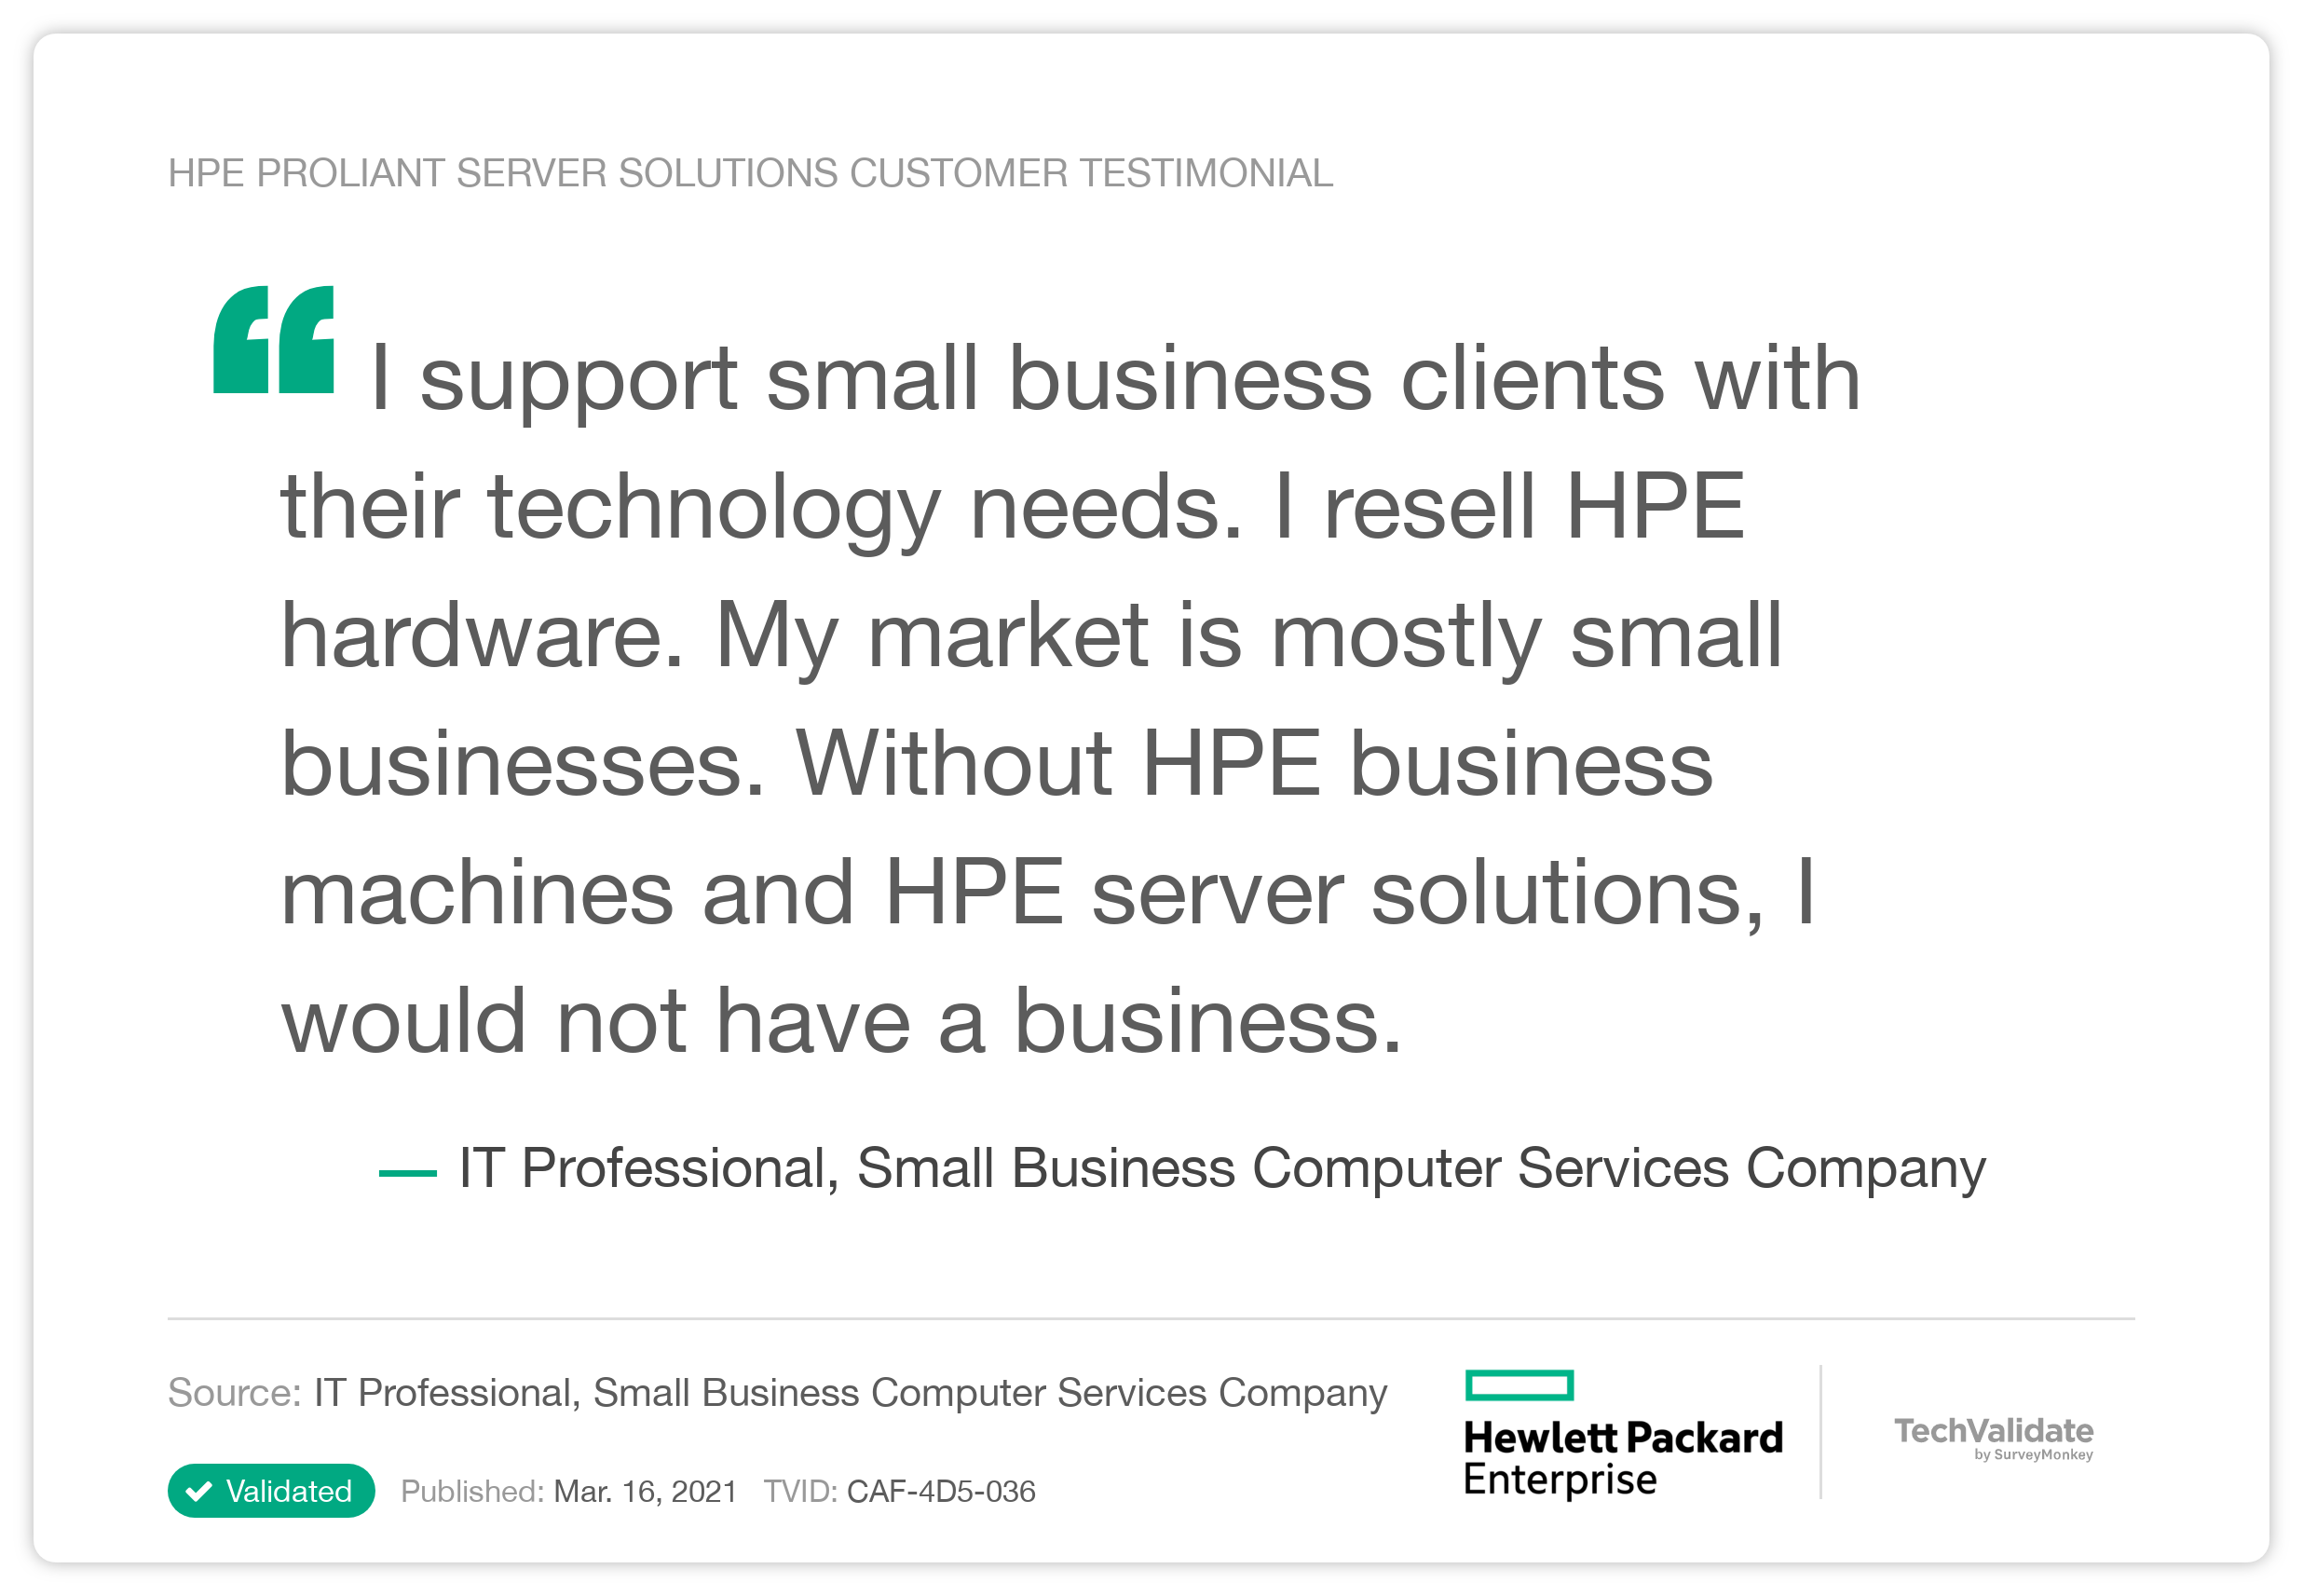 HPE ProLiant Server solutions Customer Testimonial